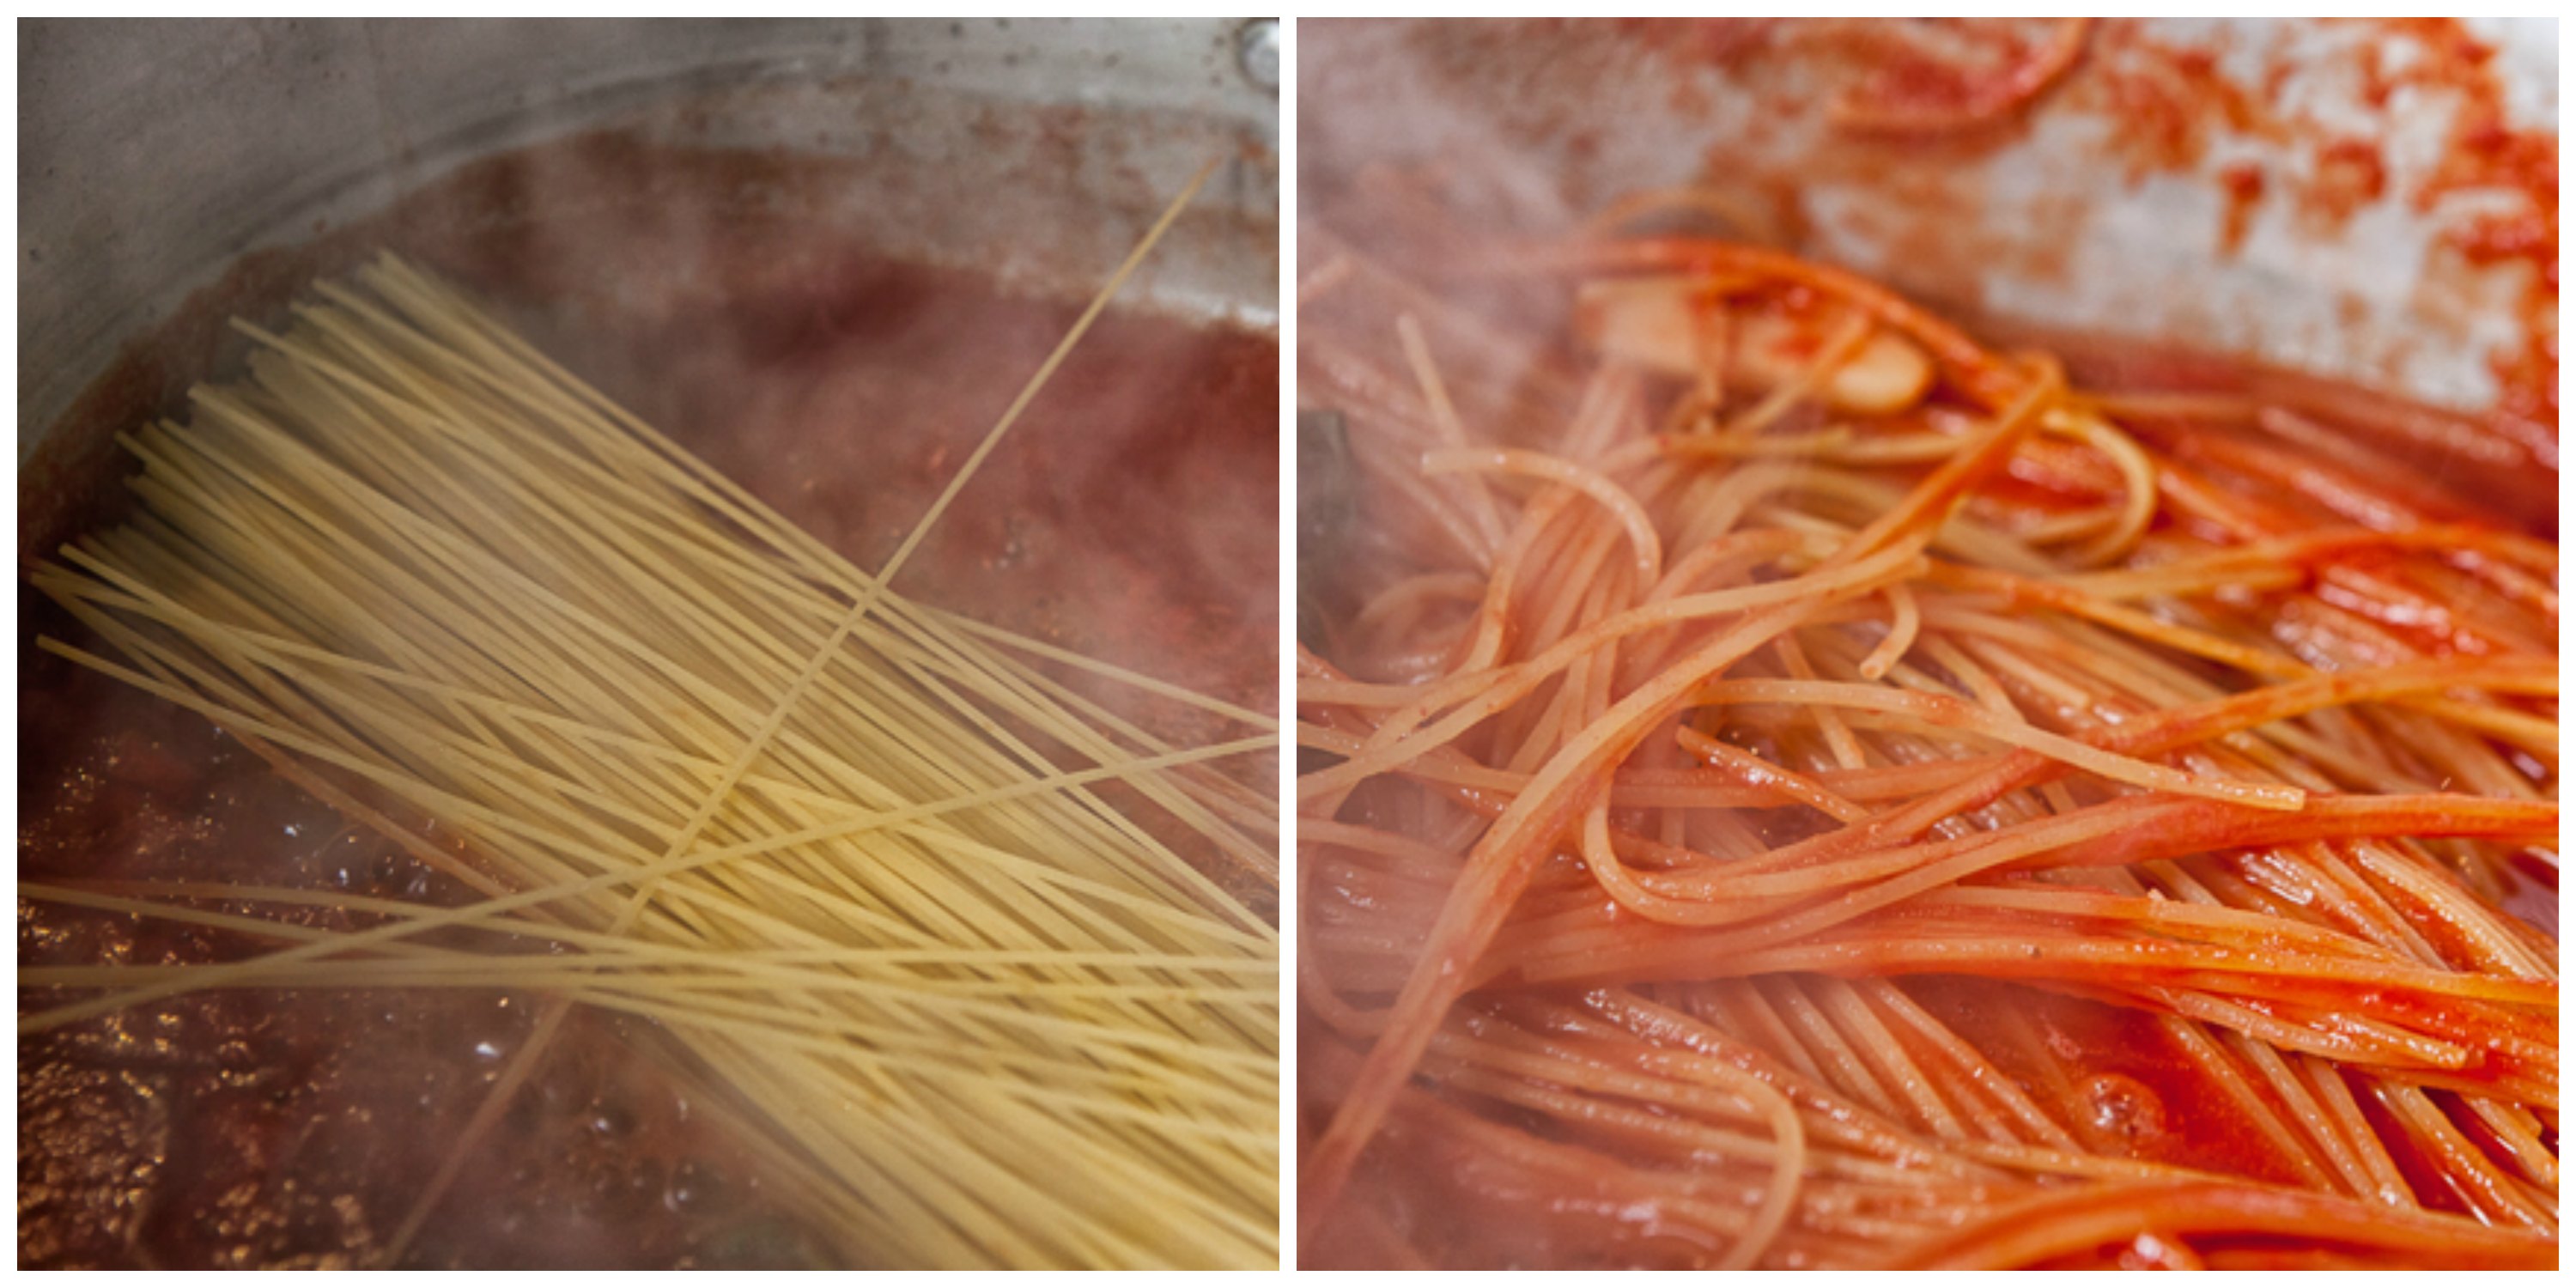 spaghetti al pomodoro di Peppe Guida